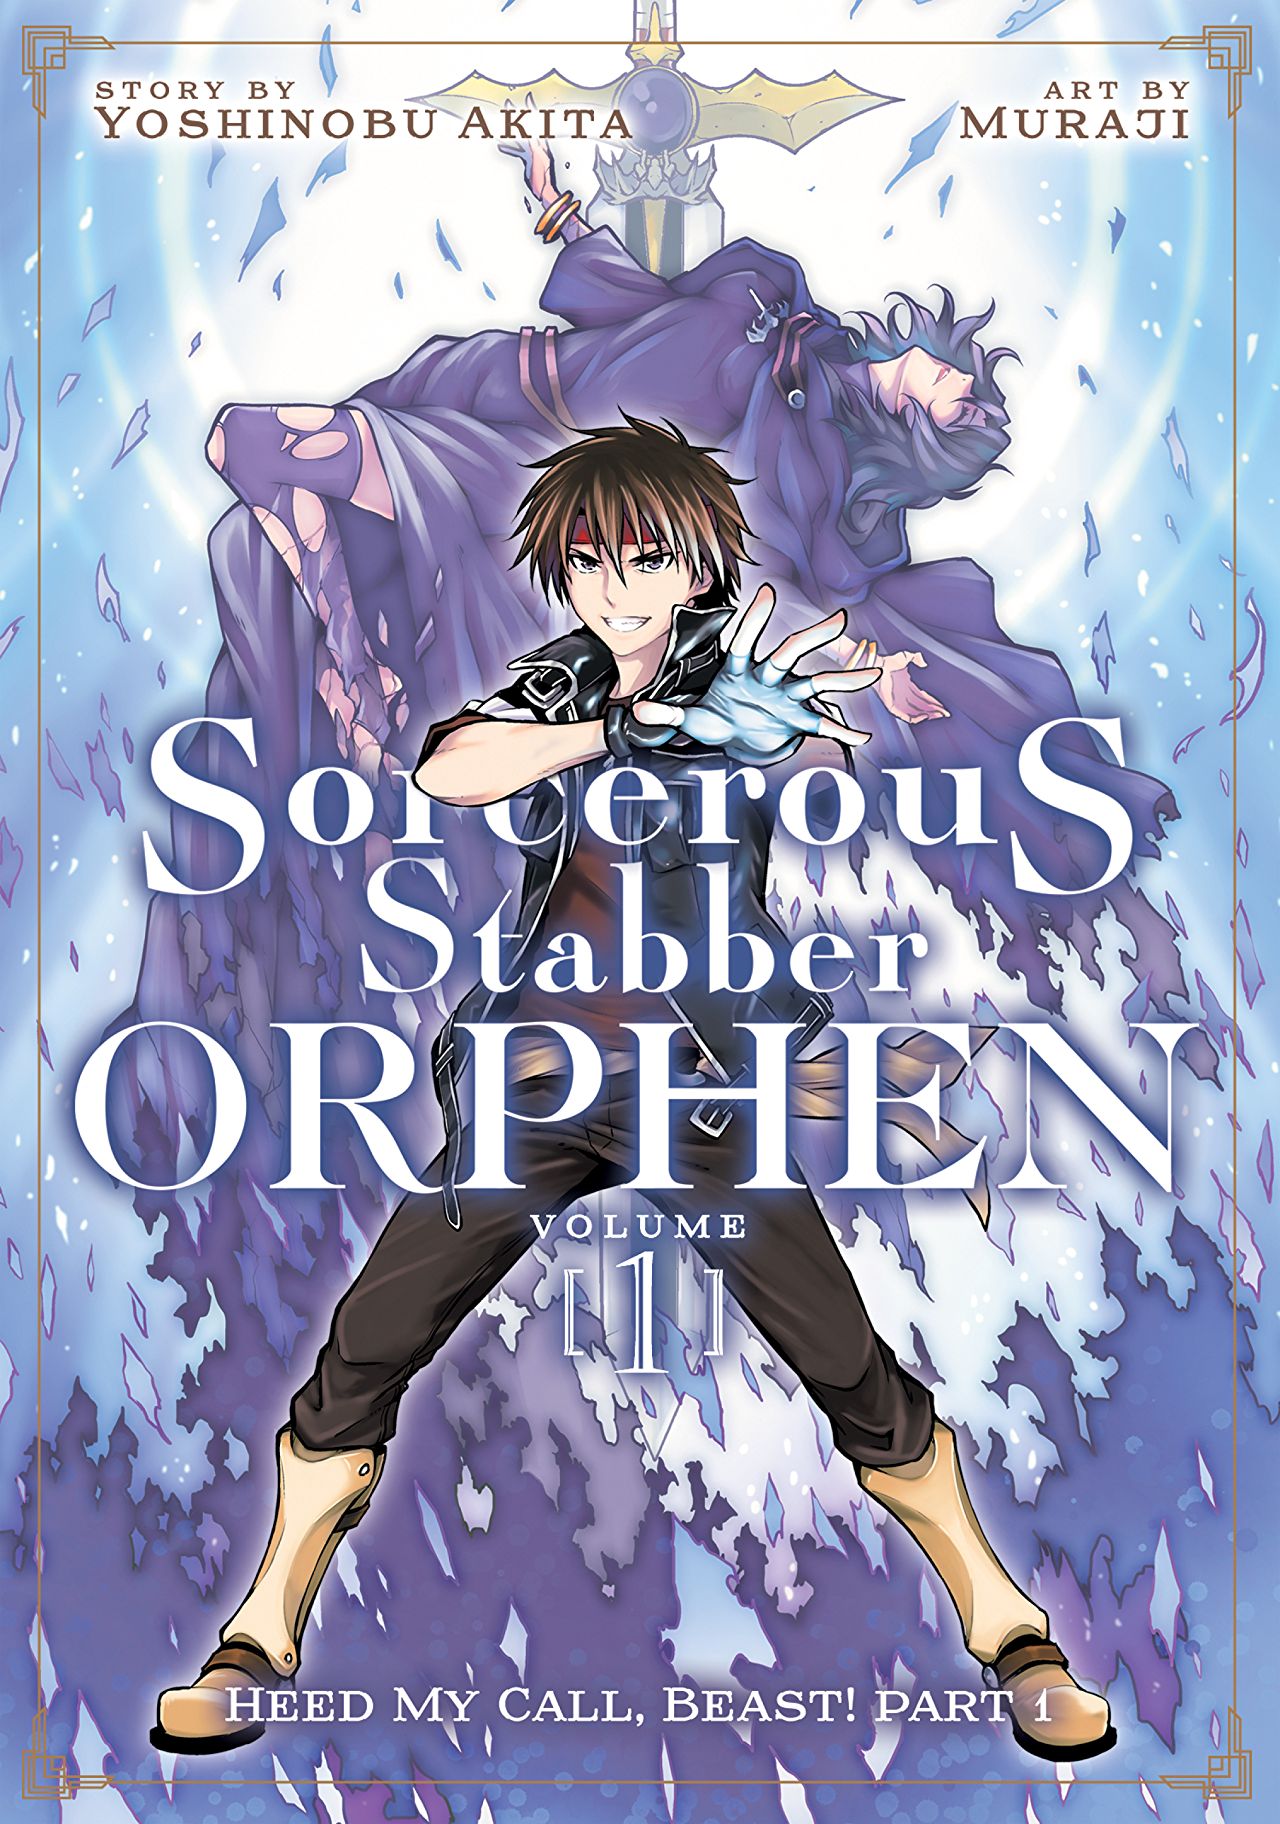 Sorcerous Stabber Orphen Novels Get New TV Anime - News - Anime News Network